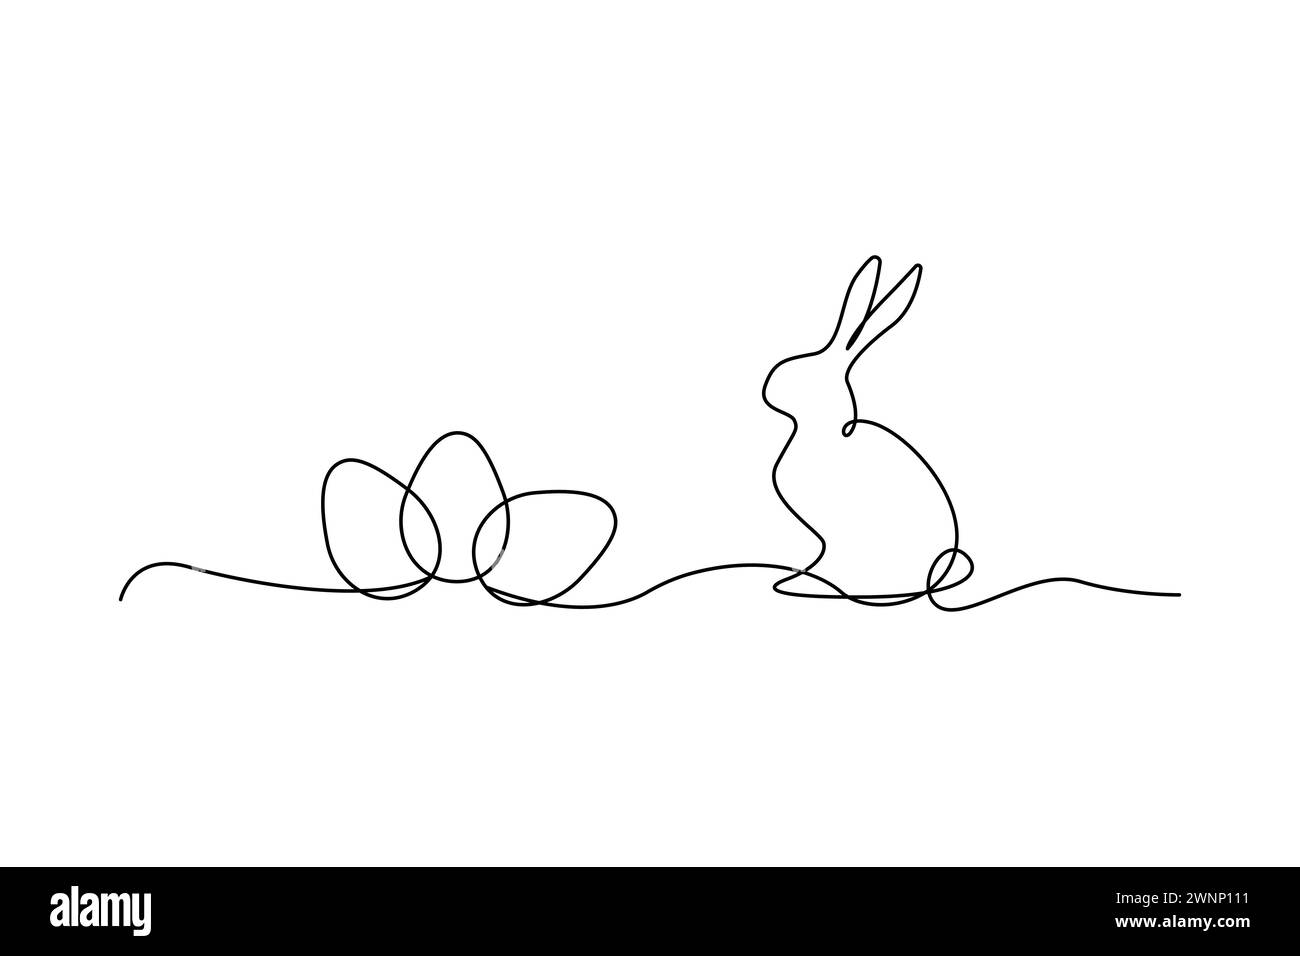 Dessin d'une ligne de lapin avec des oeufs de Pâques. Minimaliste Pâques Illustration vectorielle. SPE 10. Image de stock. Illustration de Vecteur